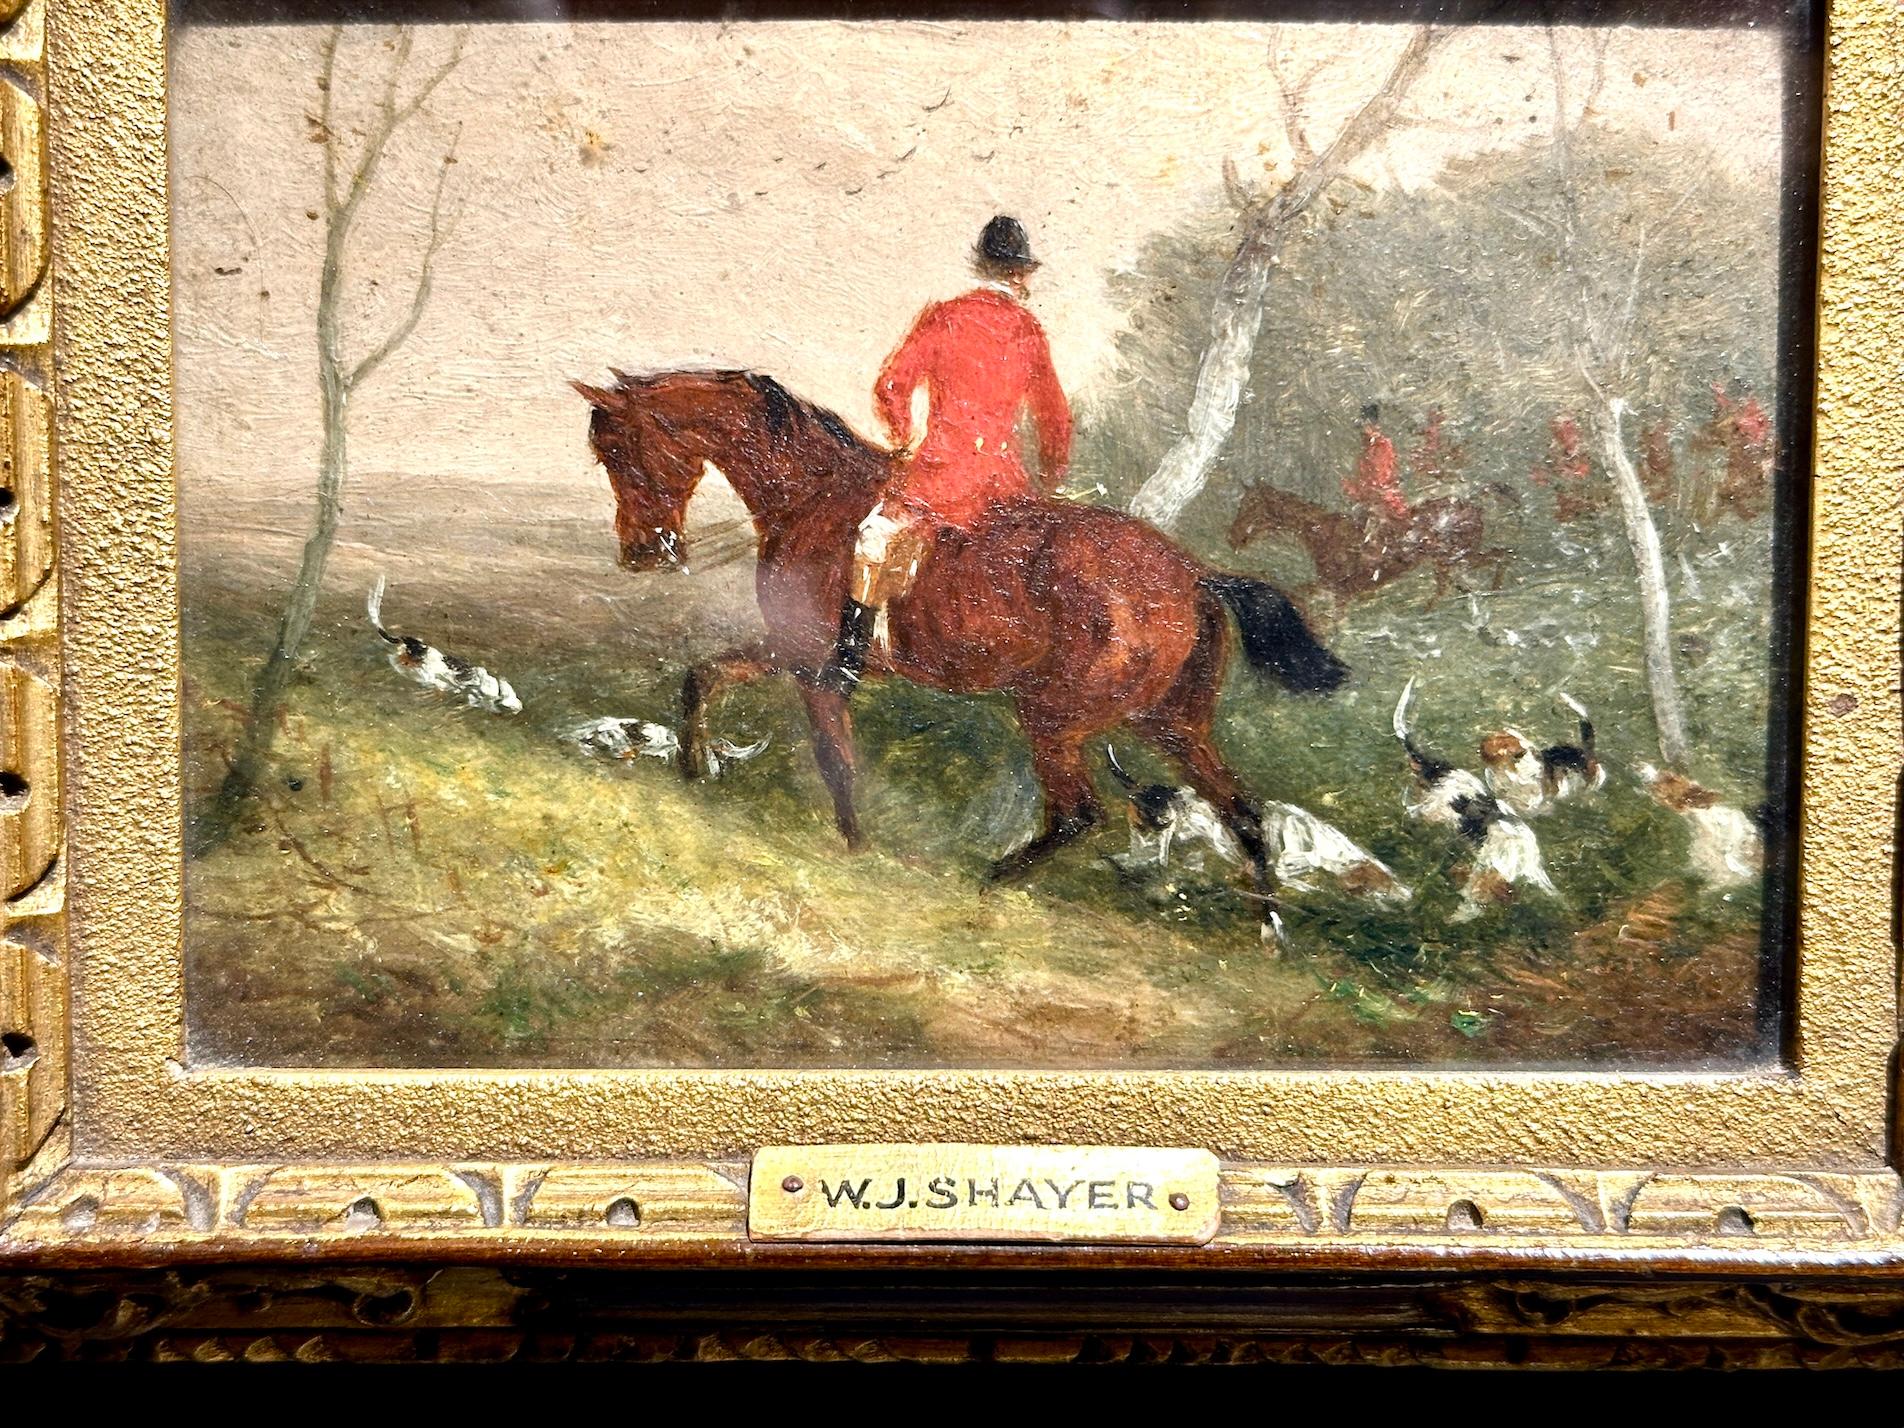 chasseur de renard anglais sur son cheval, huile dans un paysage du 19e siècle - Painting de William Joseph Shayer